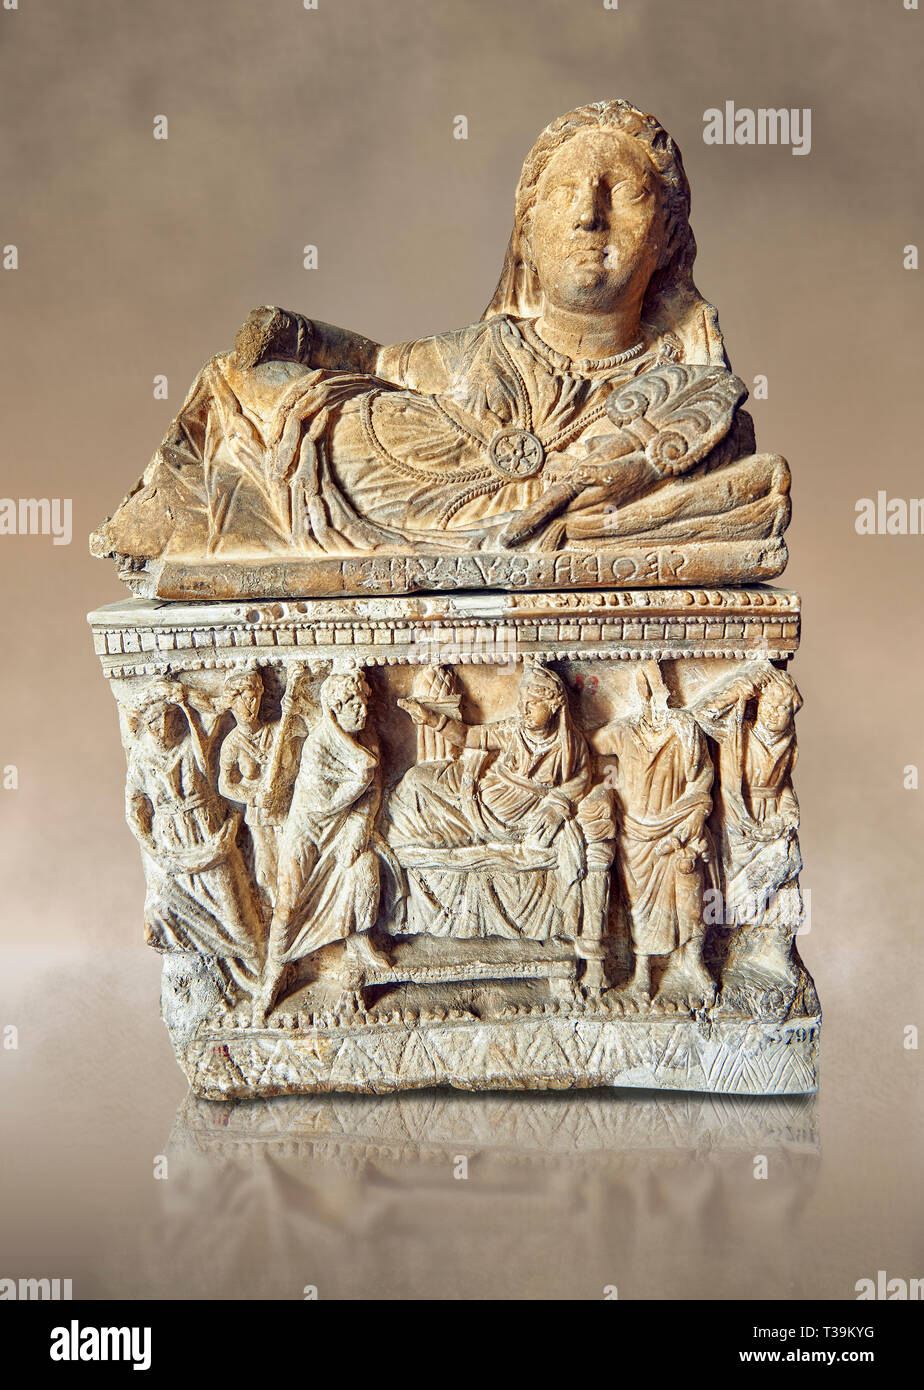 Etruskische hellenistischen Stil, cinerary funreary, Urne, Nationalen  Archäologischen Museum Florenz, Italien Stockfotografie - Alamy